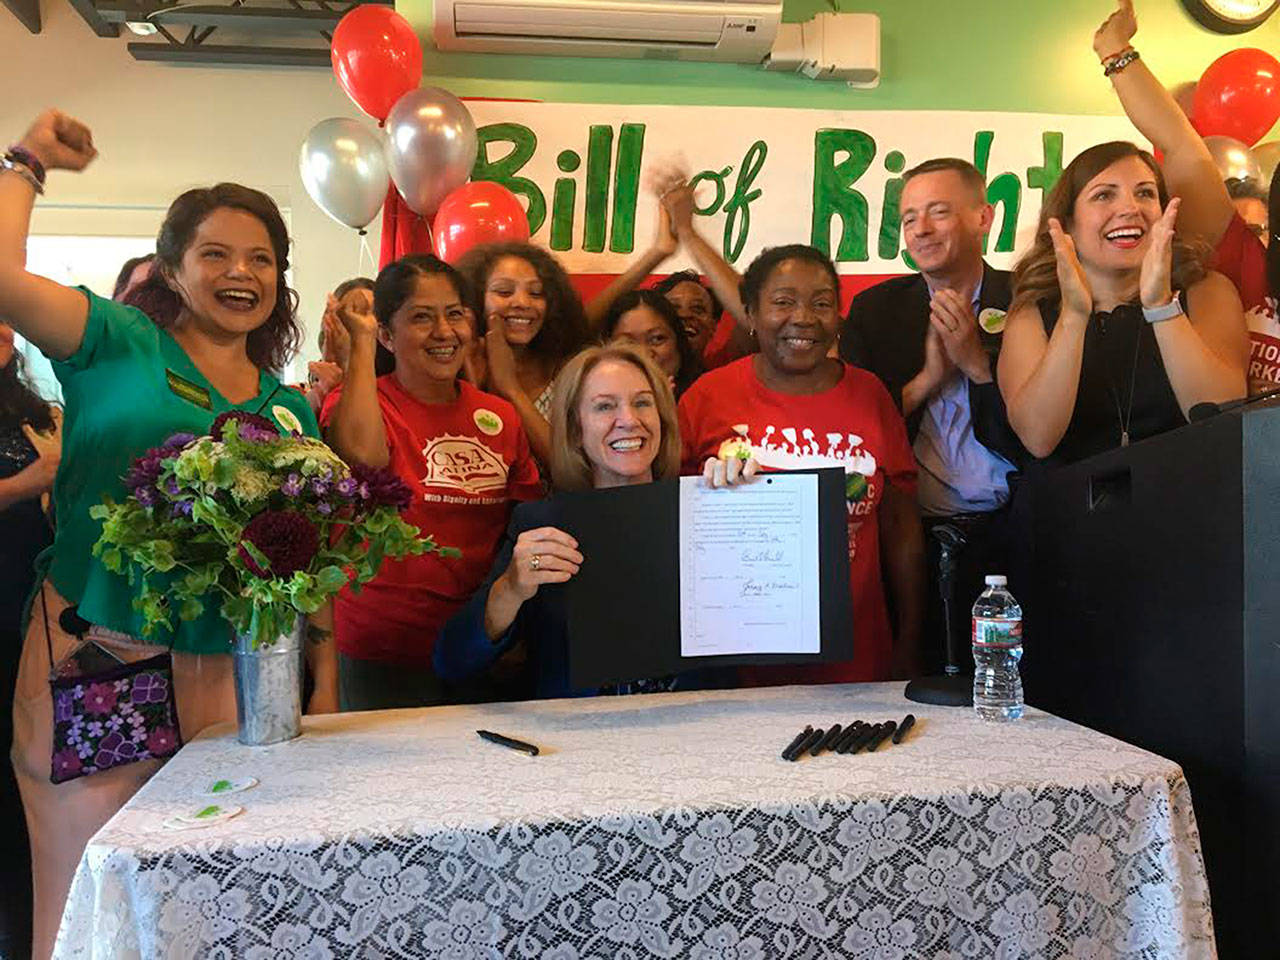 La alcaldesa Jenny A. Durkan se unió a la concejala Teresa Mosqueda y a los trabajadores domésticos y promulgó la Declaración de Derechos de los Trabajadores Domésticos en Casa Latina. (Foto / Cortesía City of Seattle)